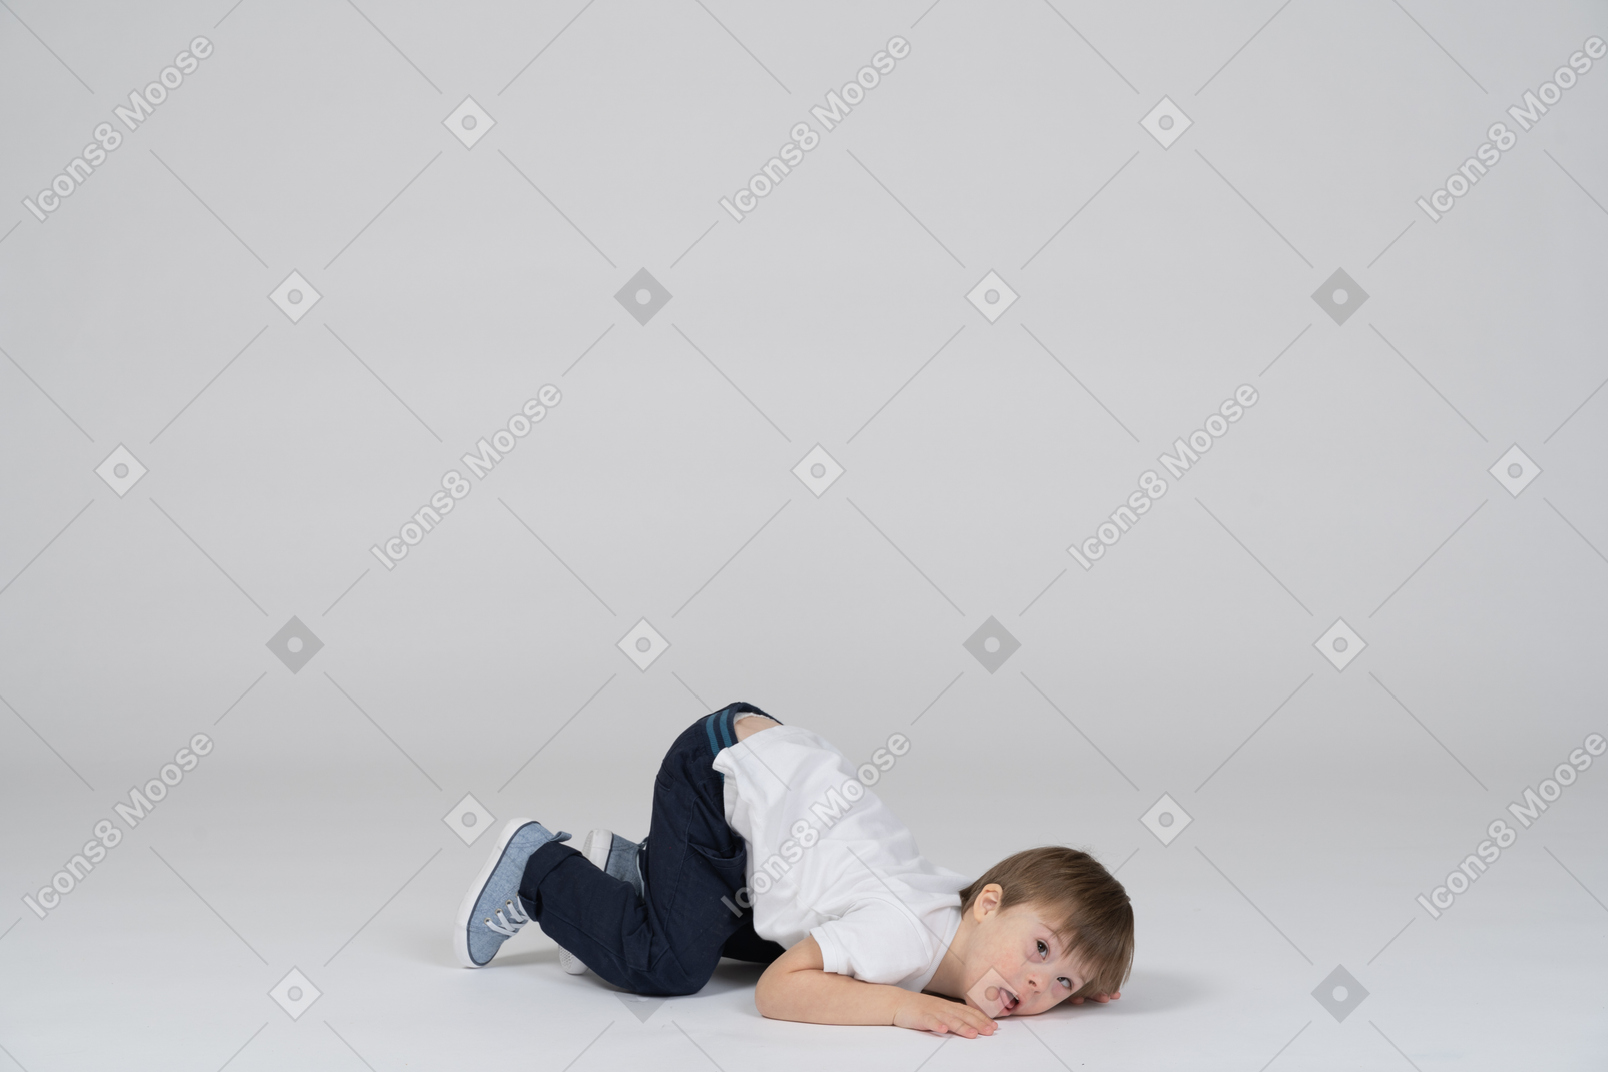 바닥에 엎드려 누워있는 어린 소년